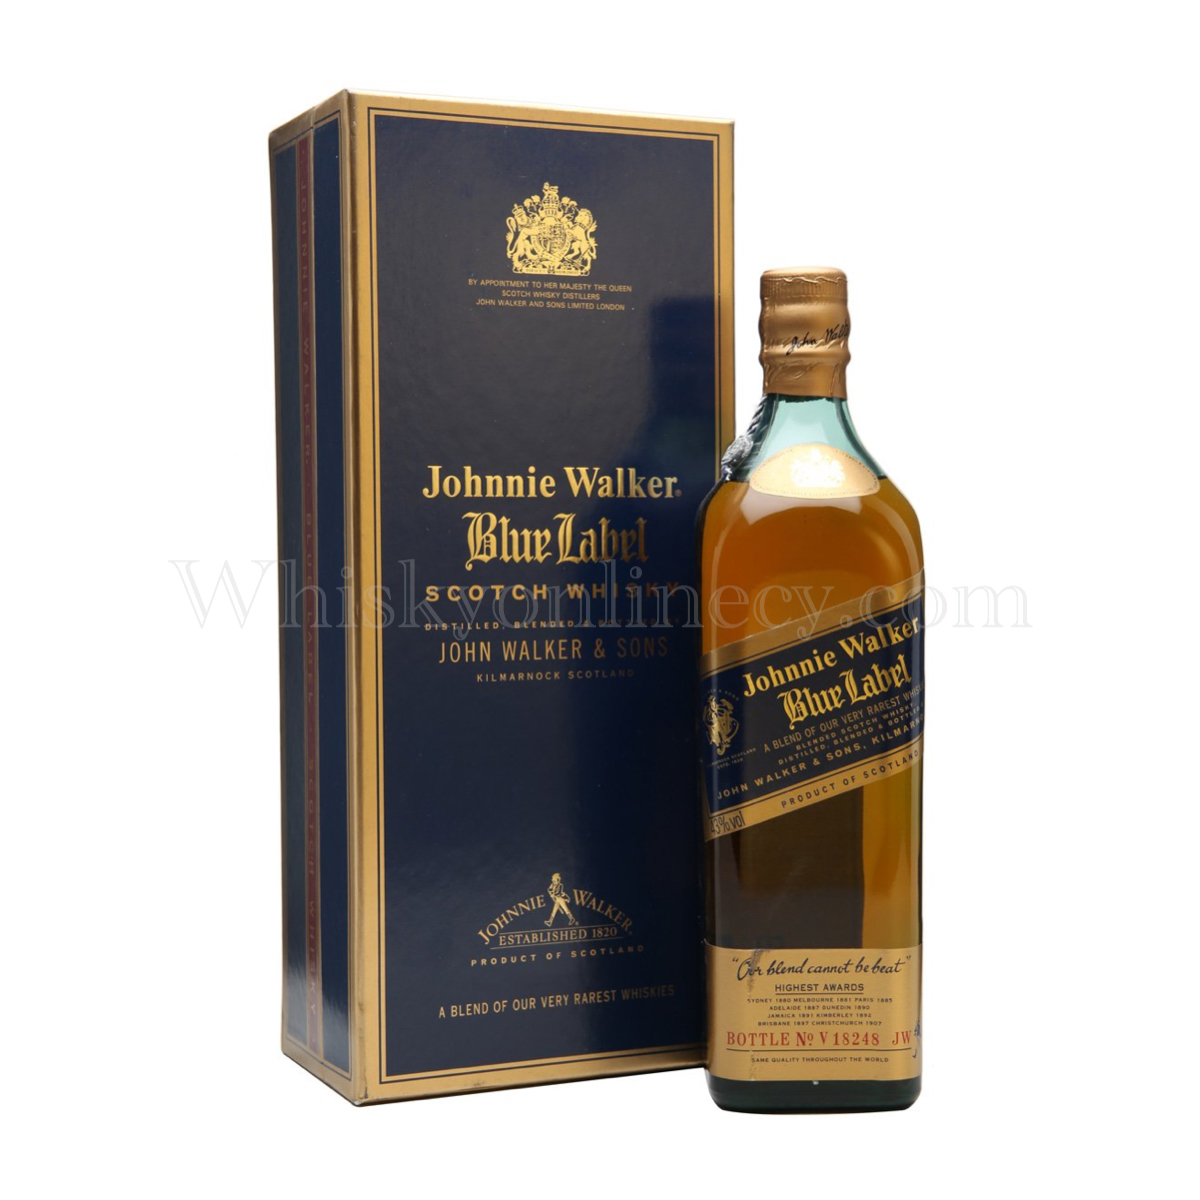 Whisky Online Cyprus - Johnnie Walker Blue Label 1990s Old Bottle 70cl, 40%